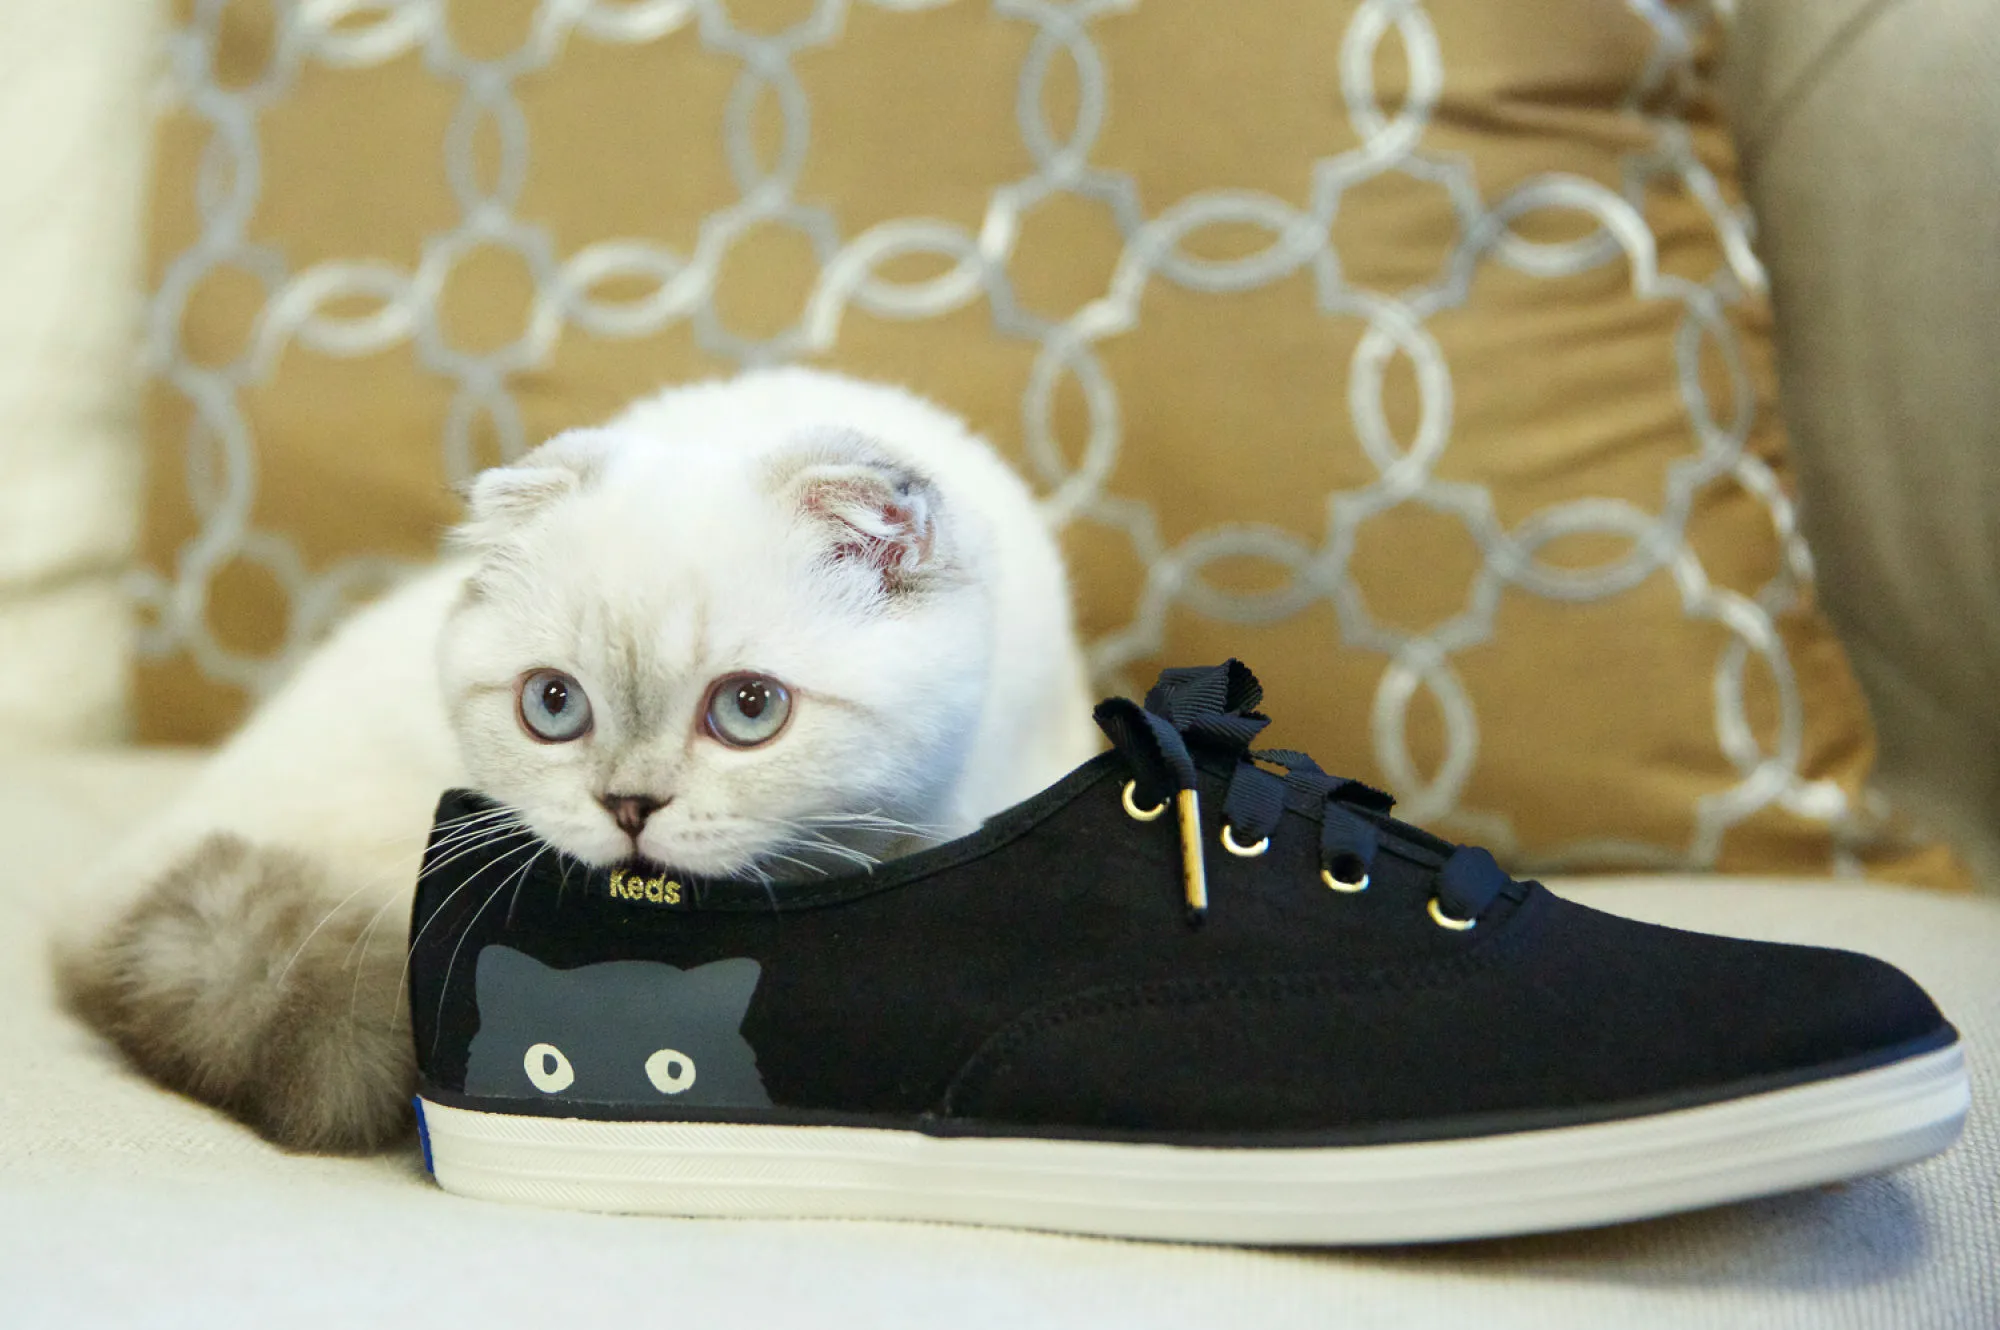 Mèo Olivia Benson của Taylor Swift quảng cáo dòng giày lấy cảm hứng từ chính mình. Ảnh: Keds